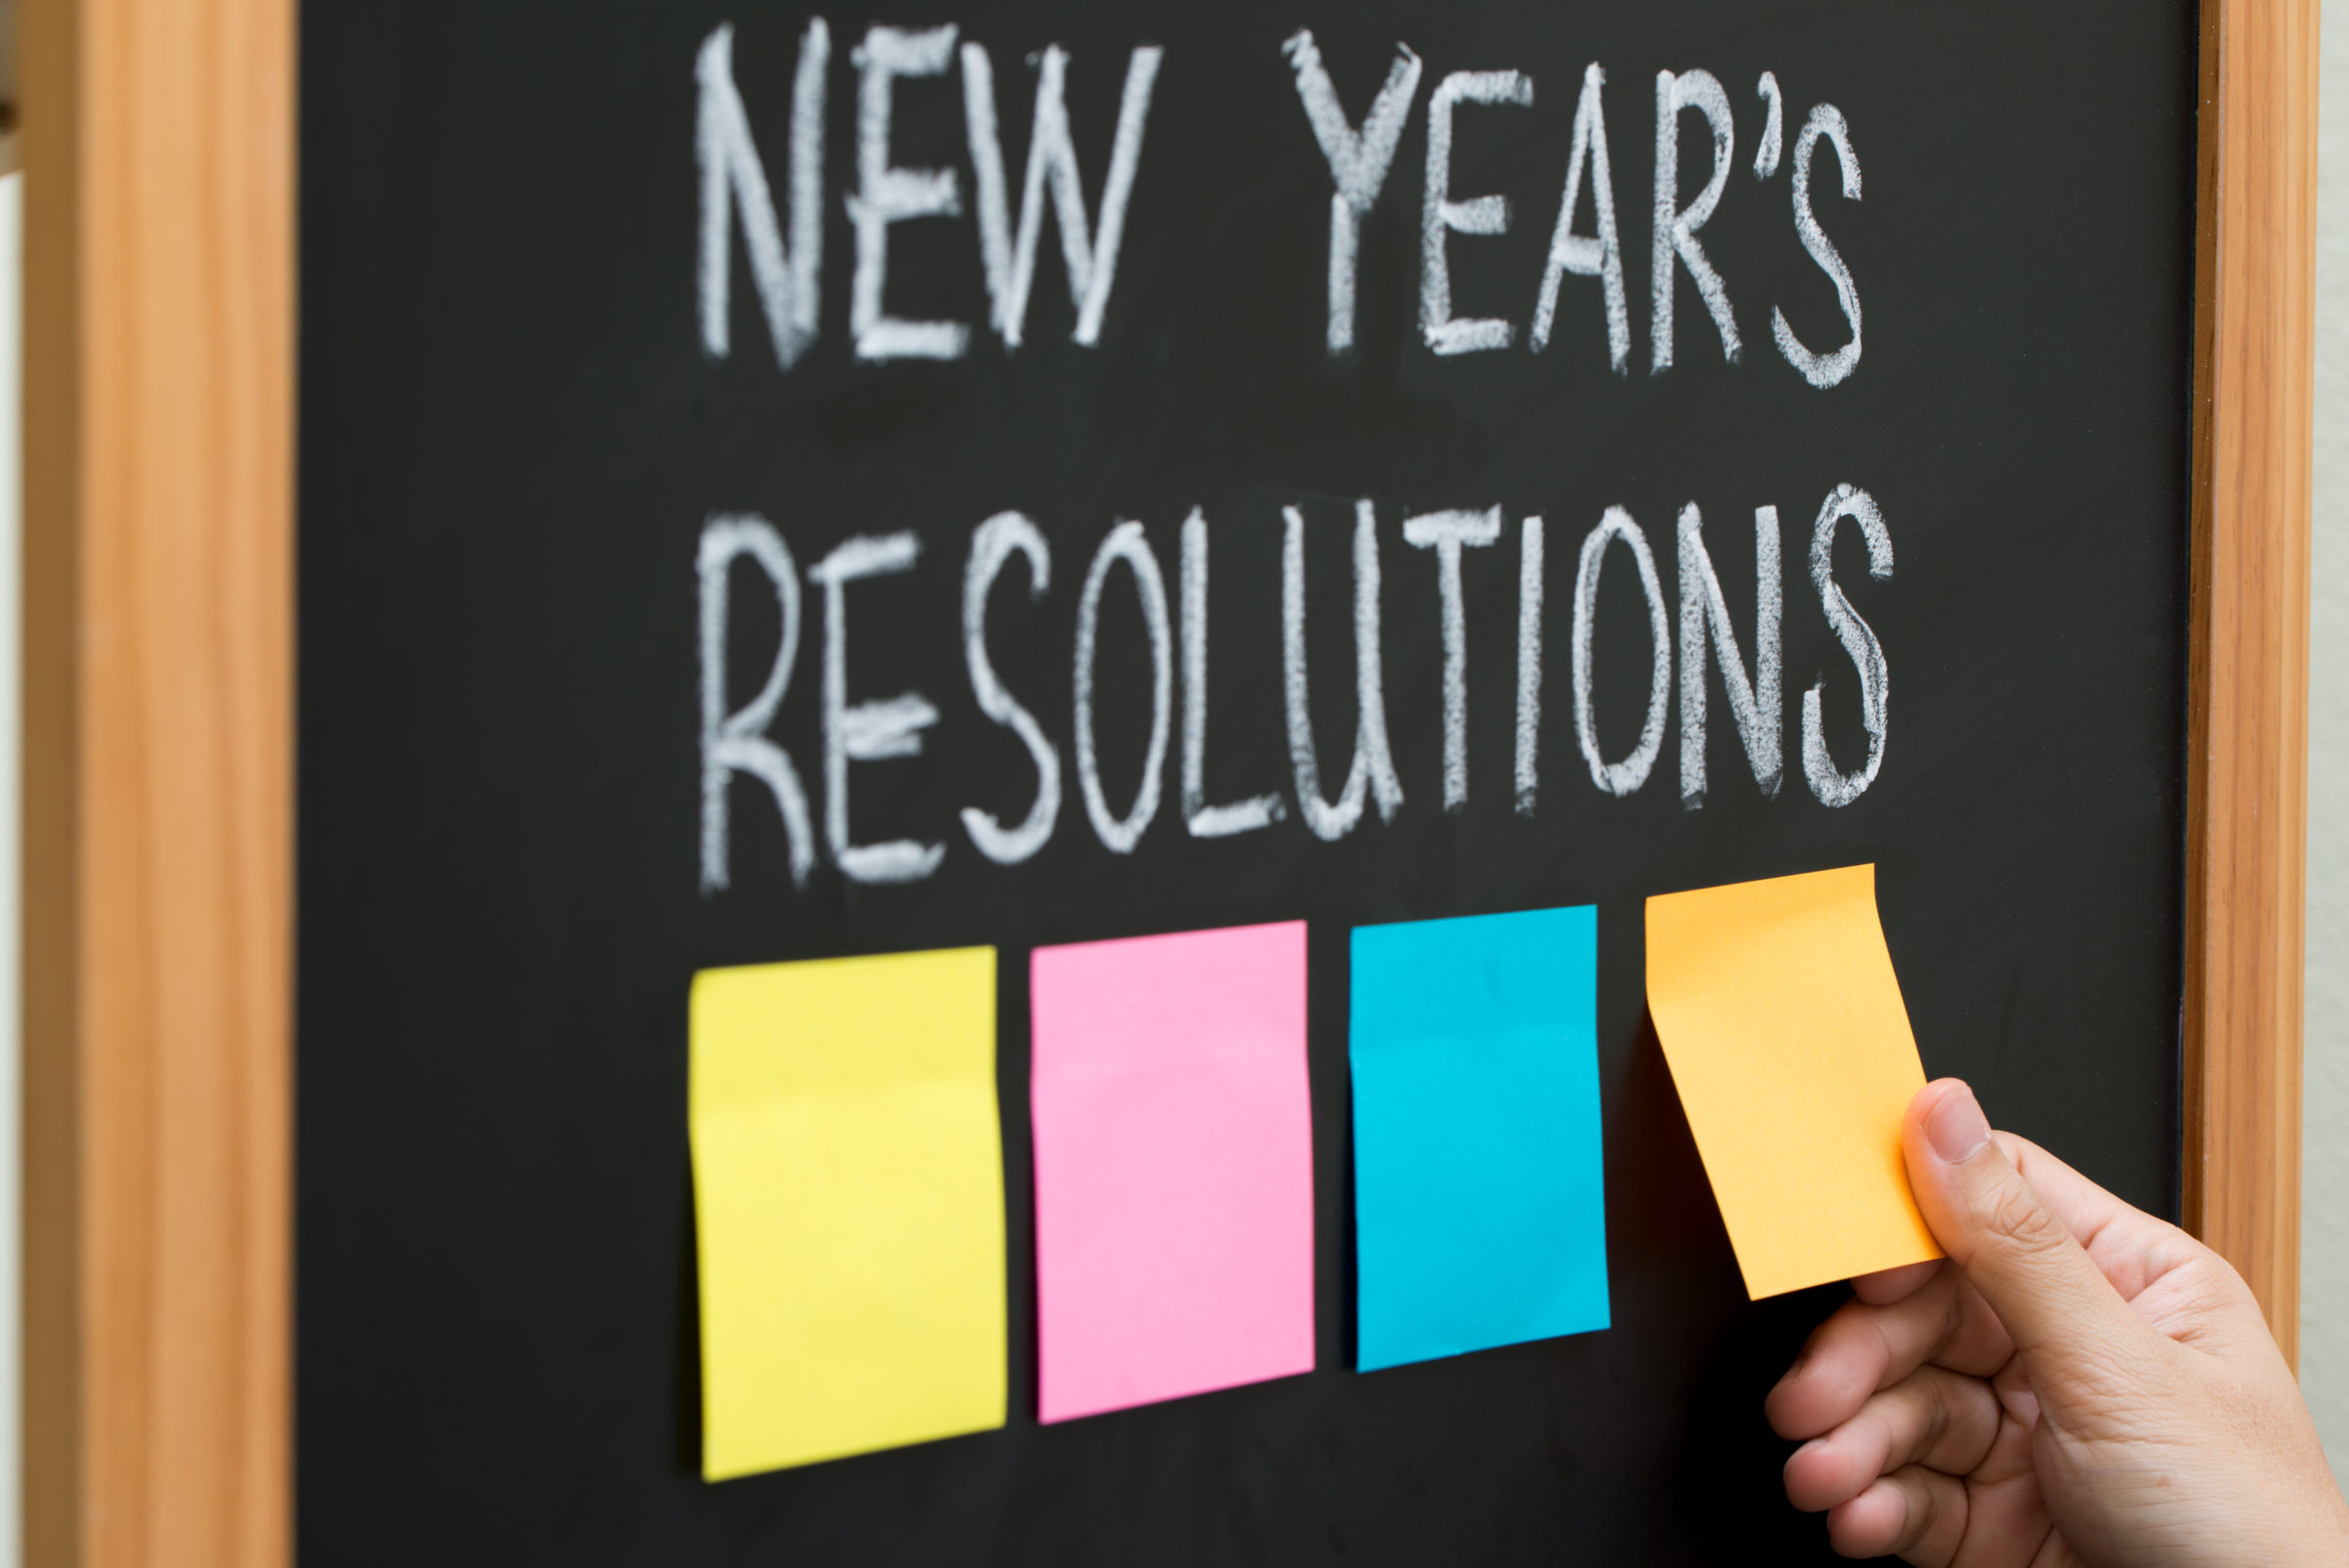 new year resolutions 2021 08 26 22 35 25 utc